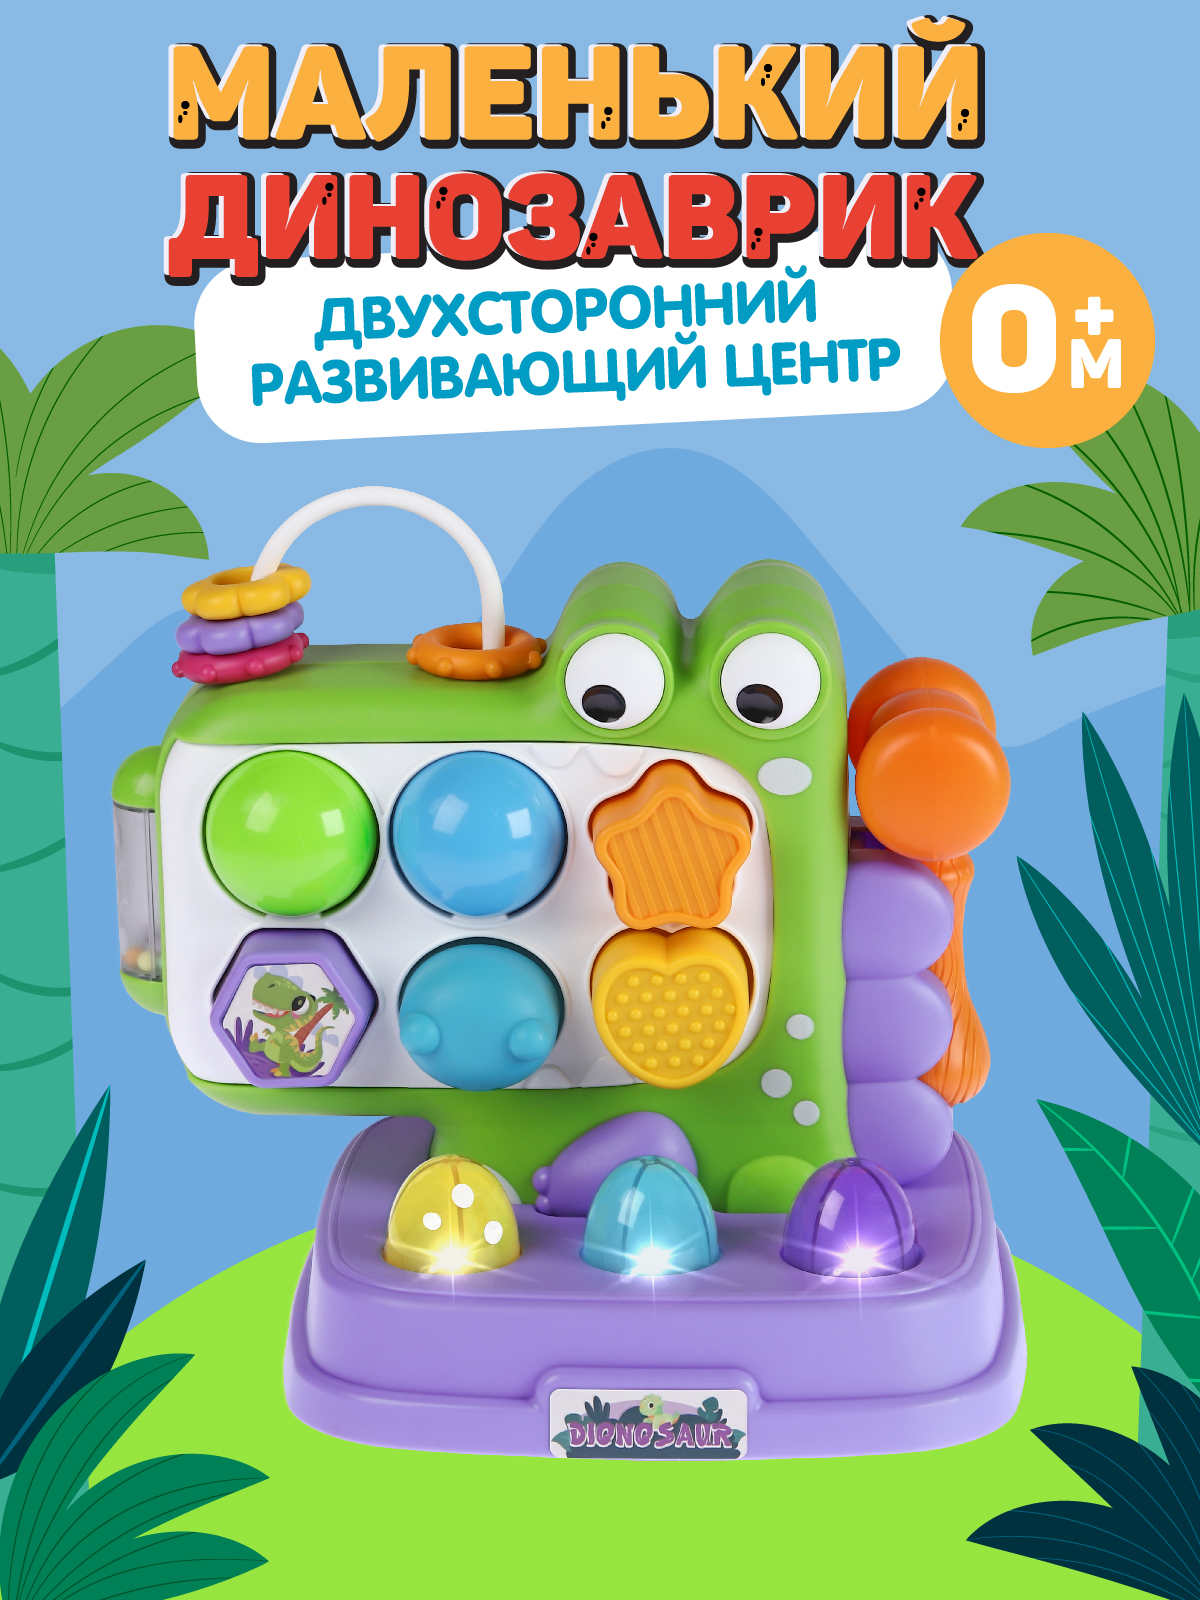 Развивающая игрушка Smart Baby Динозаврик, элементы бизиборда, сортер, JB0334119 мой маленький пони приключения и развлечения развивающая книжка с наклейками